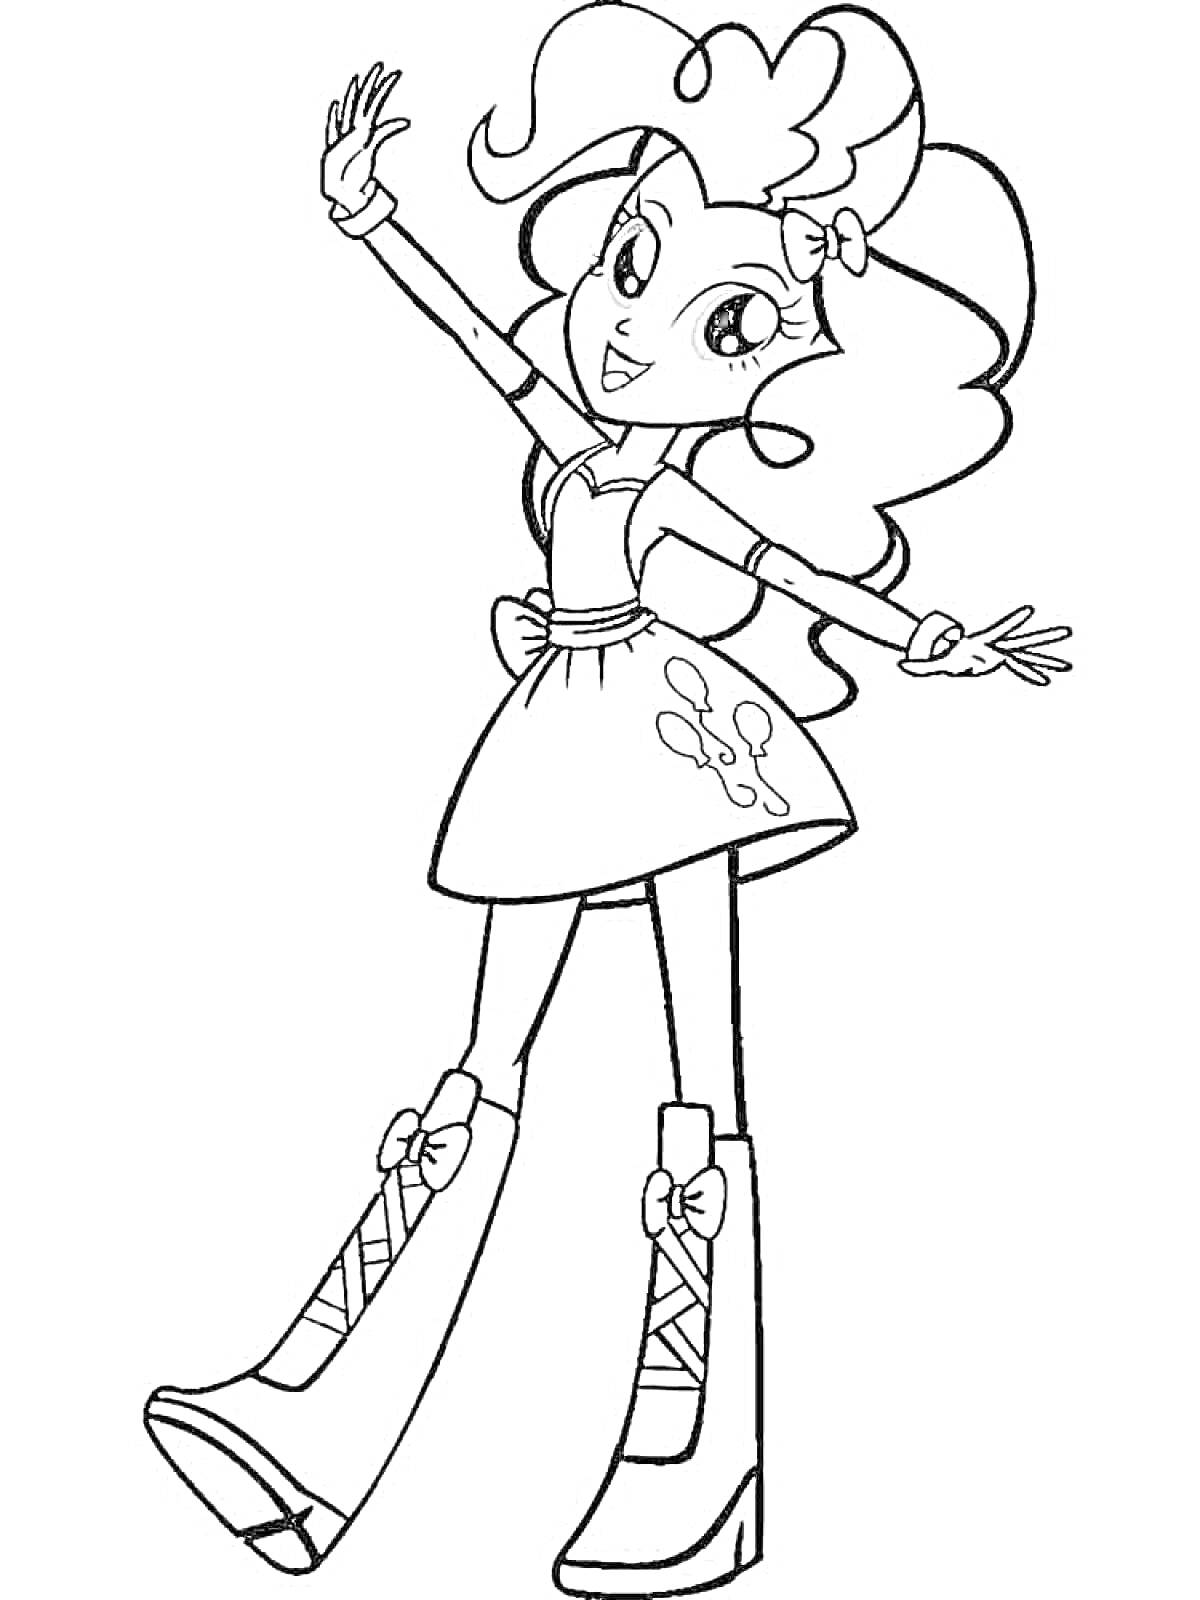 Раскраска Девушка-эквестрия с кудрявыми волосами, в платье с изображением шаров, на высоких ботинках со шнуровкой и бантиками, руки подняты вверх